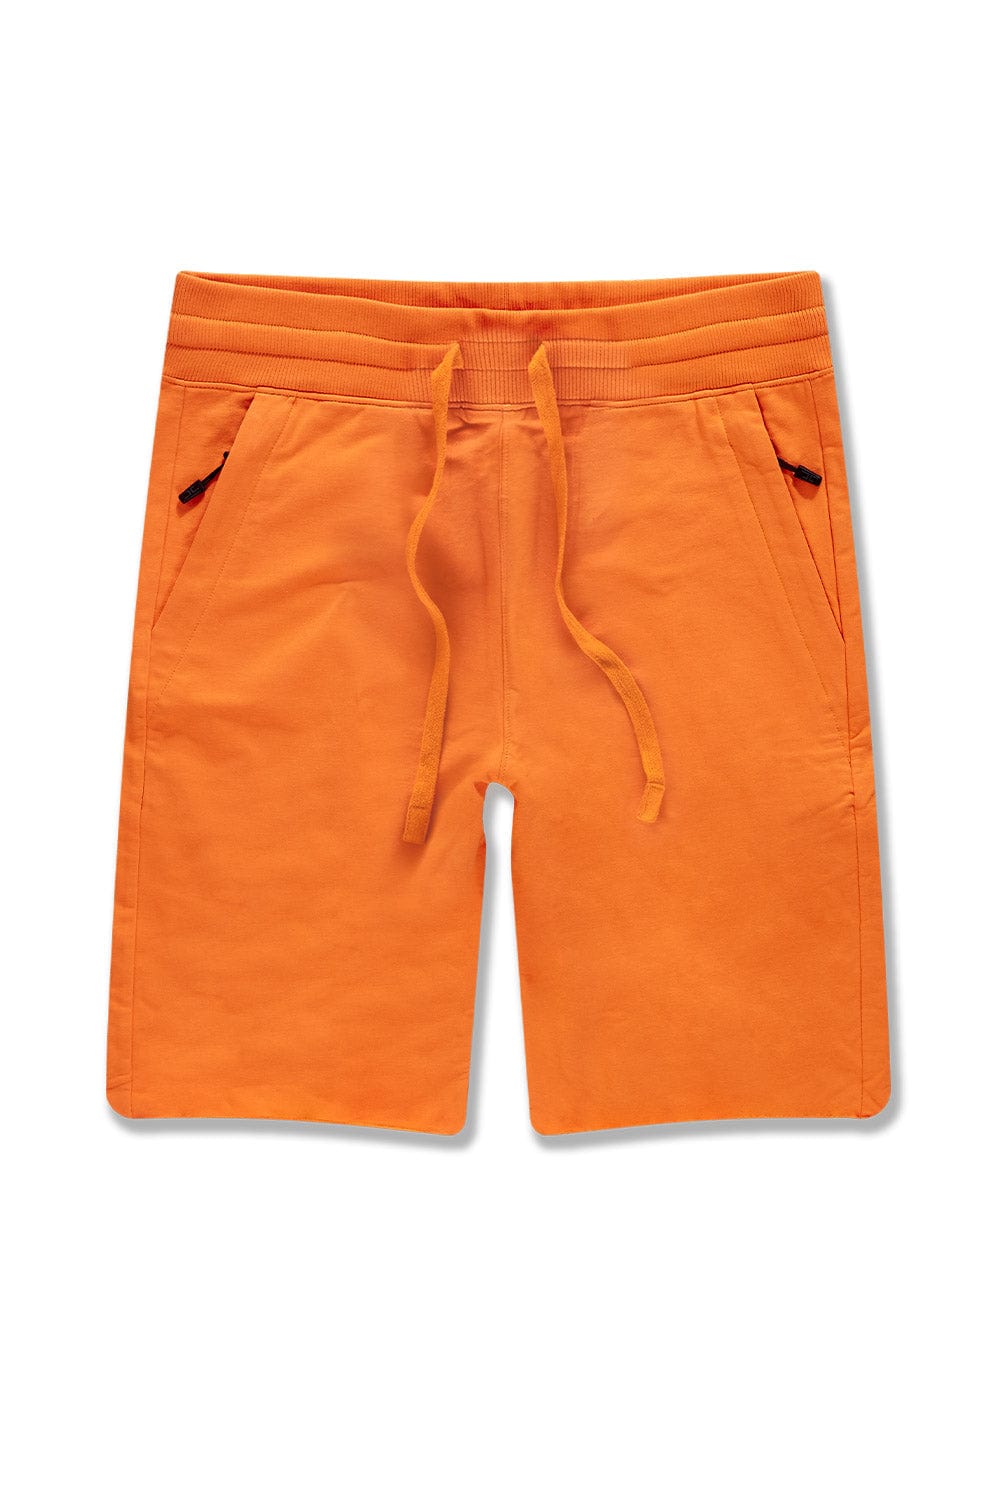 JC Big Men Big Men's OG Palma French Terry Shorts (Name Your Price) Orange / 4XL